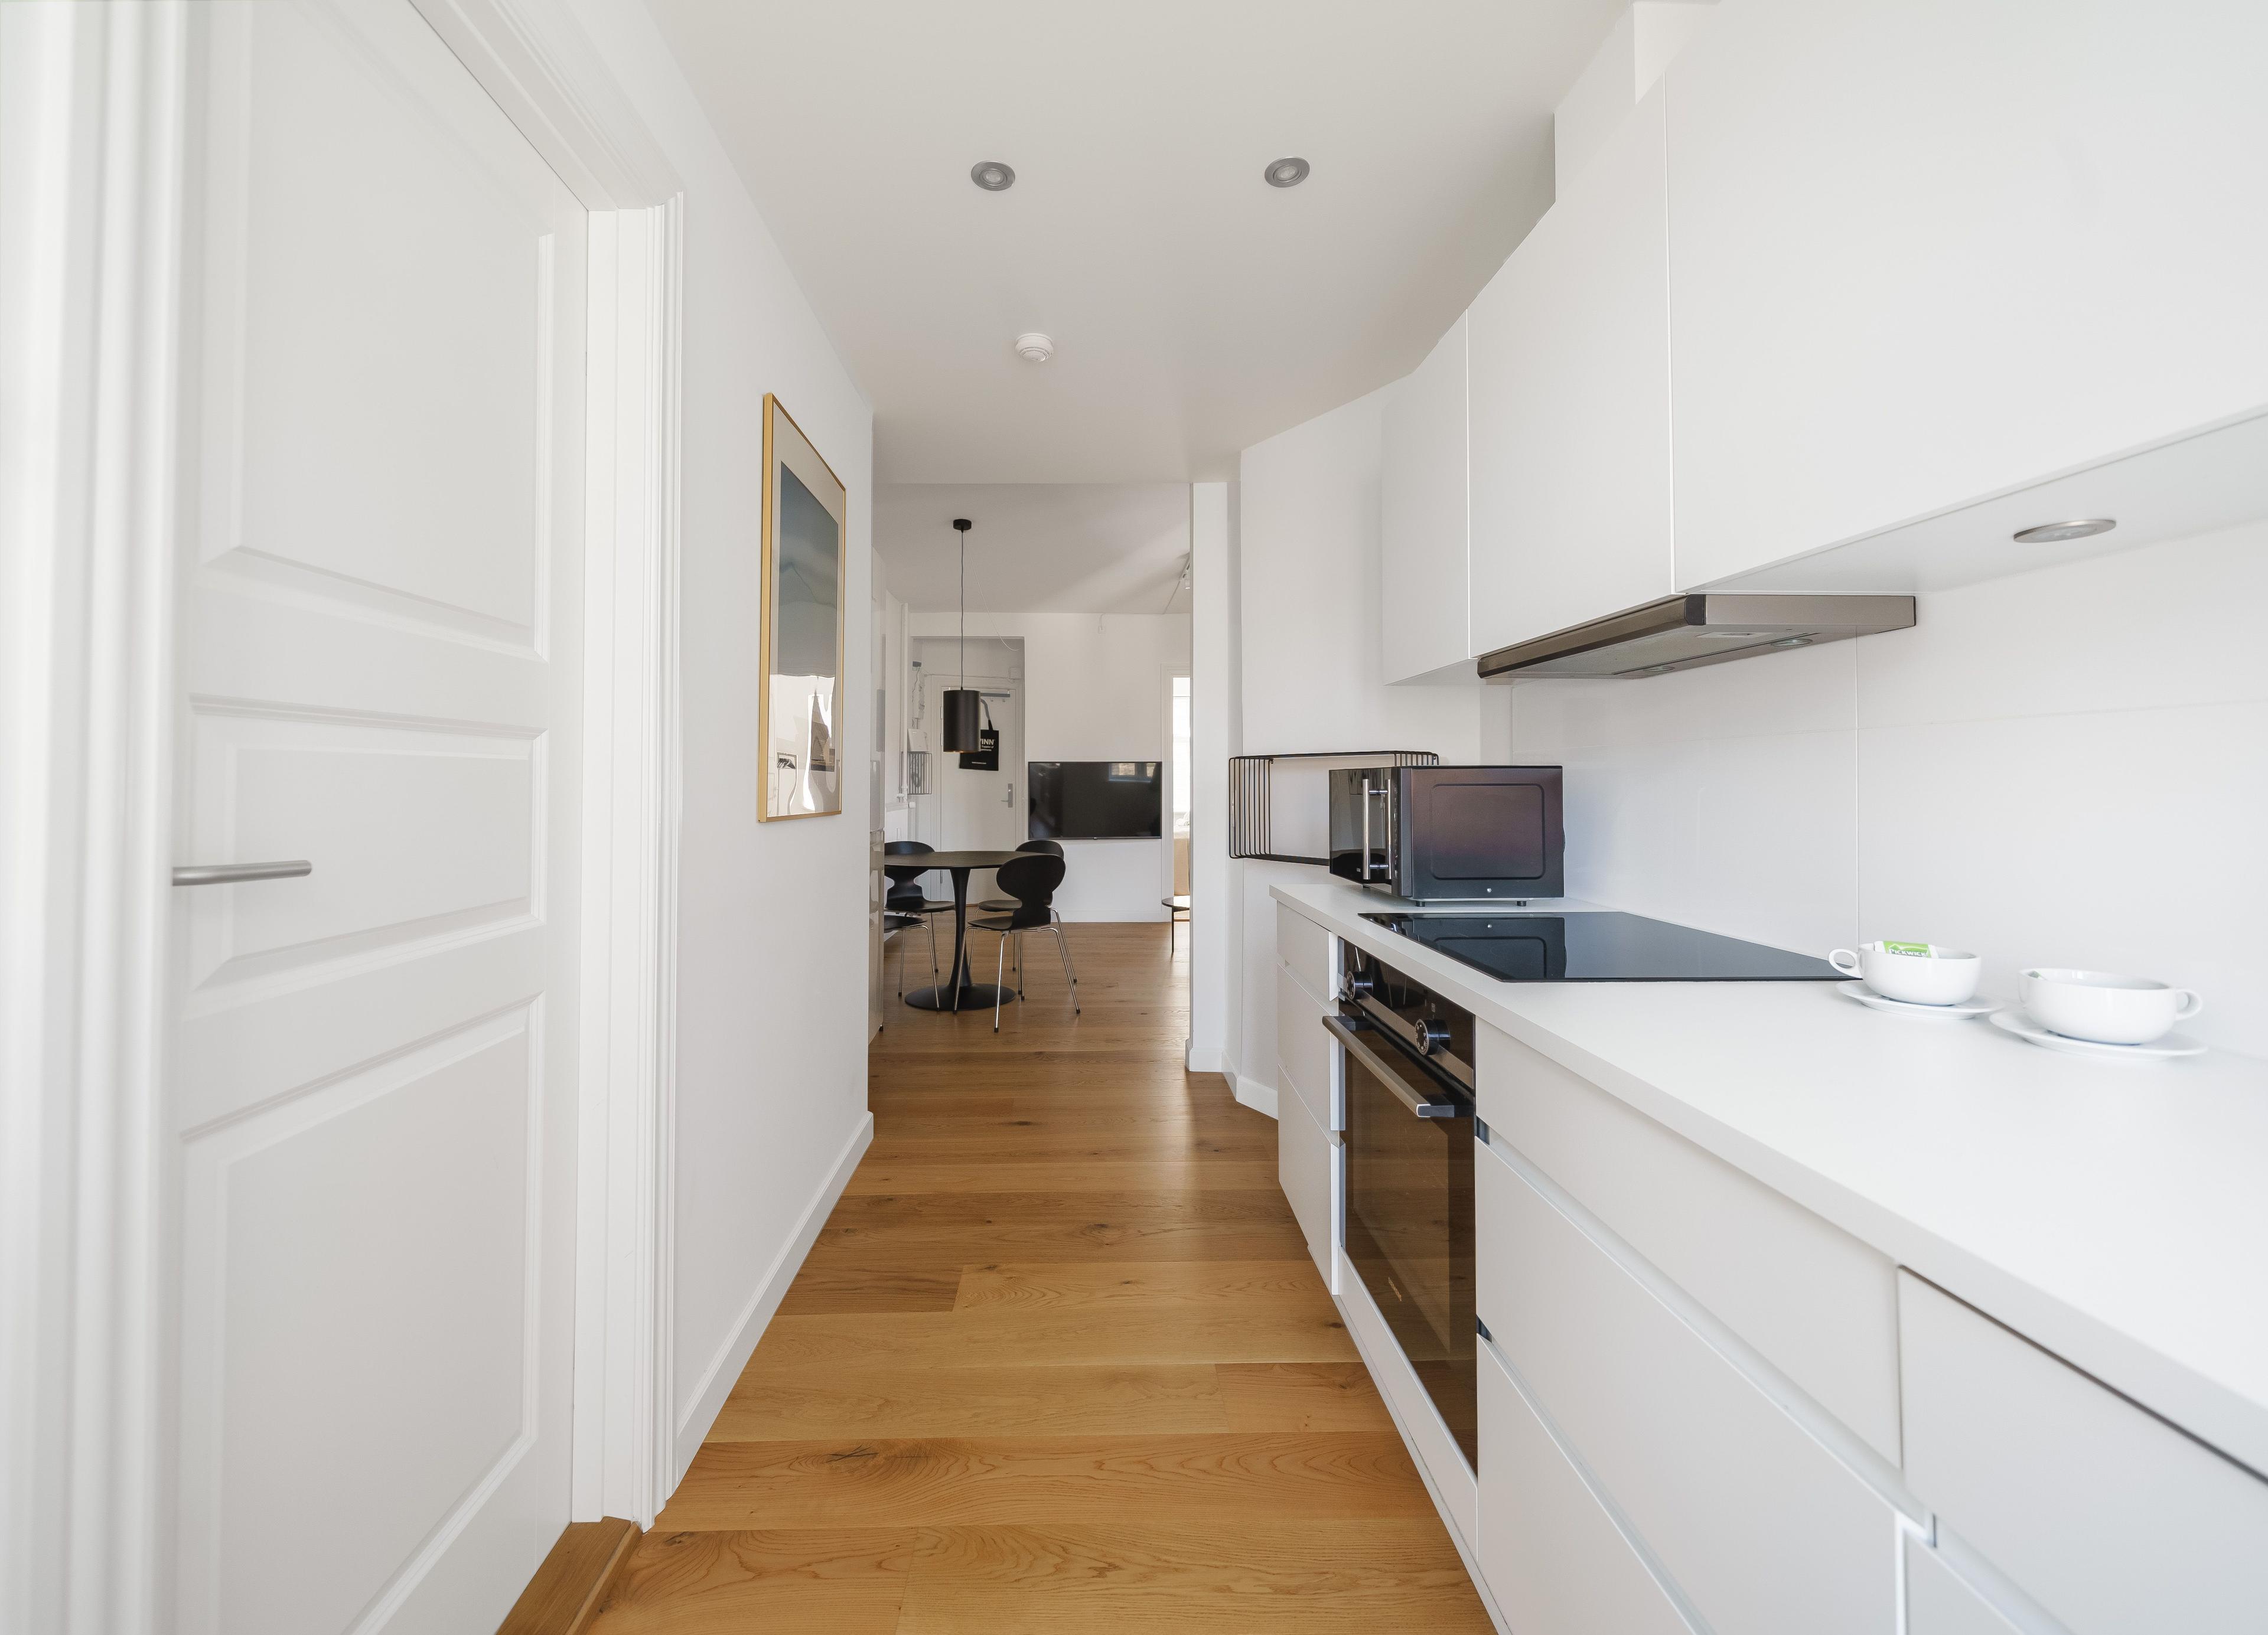 En korridor med ett kök med en vit bänkskiva